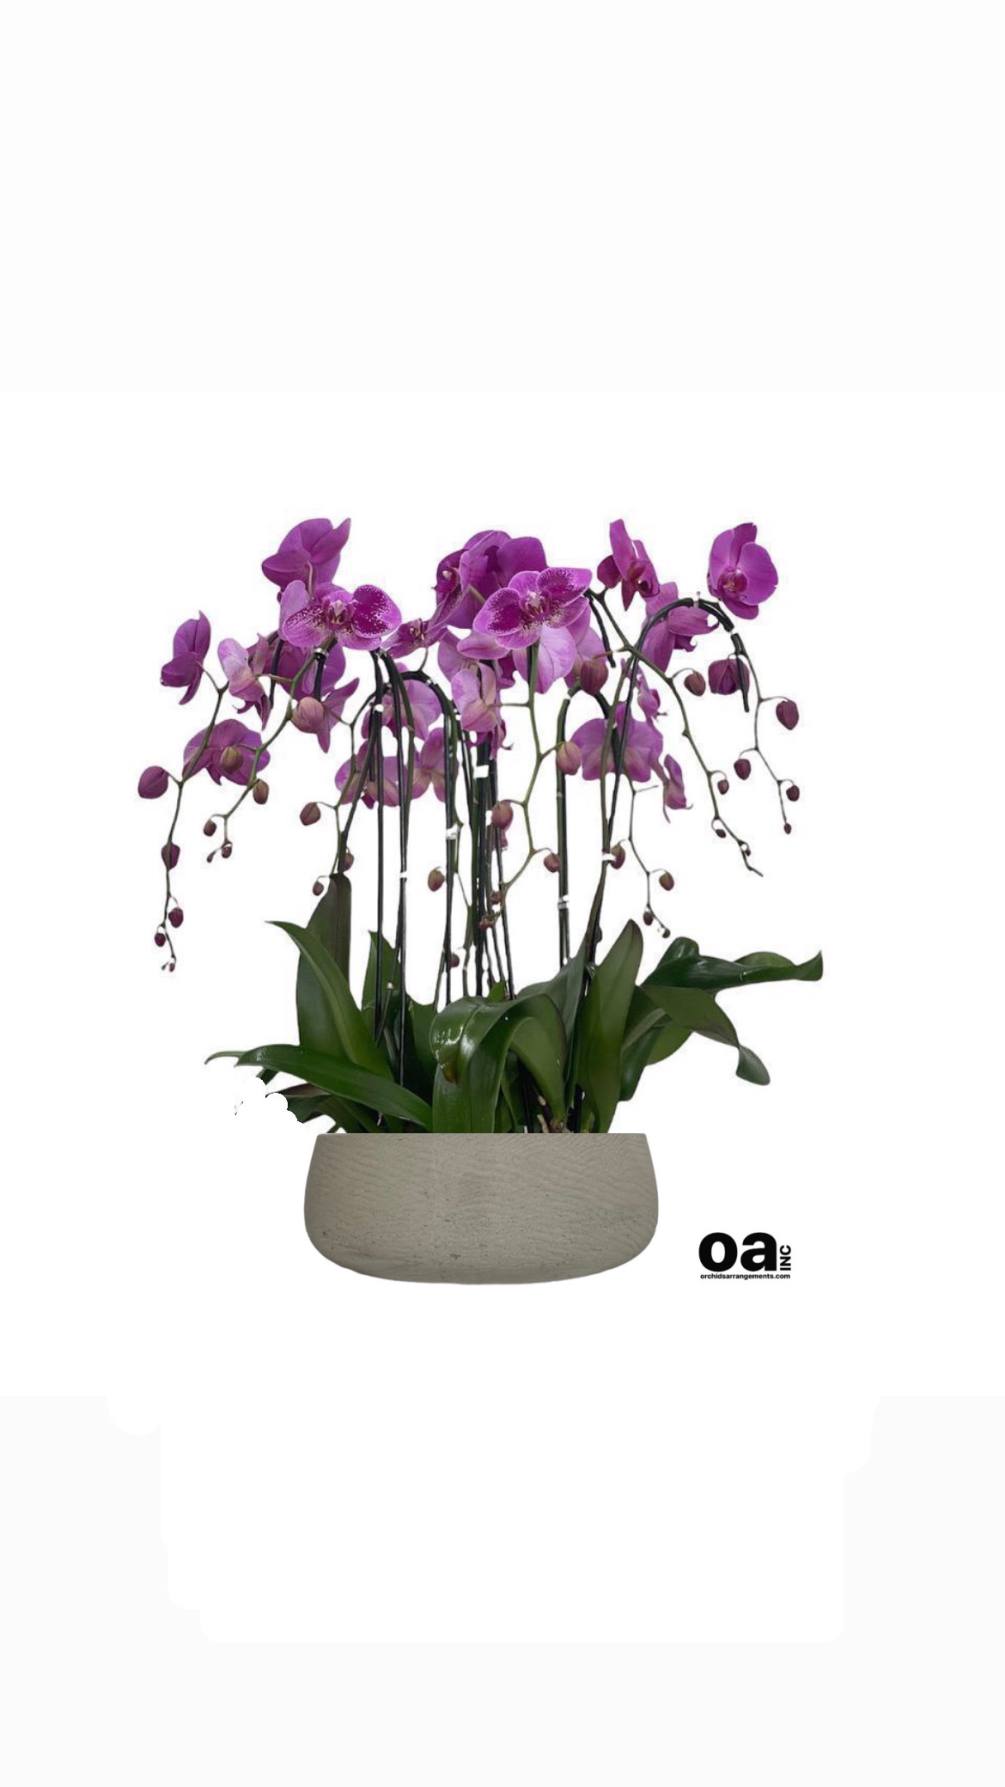 Hallandale Beach flowers bouquet
7 purple orchids flowers 20&quot; D x 6&quot; T